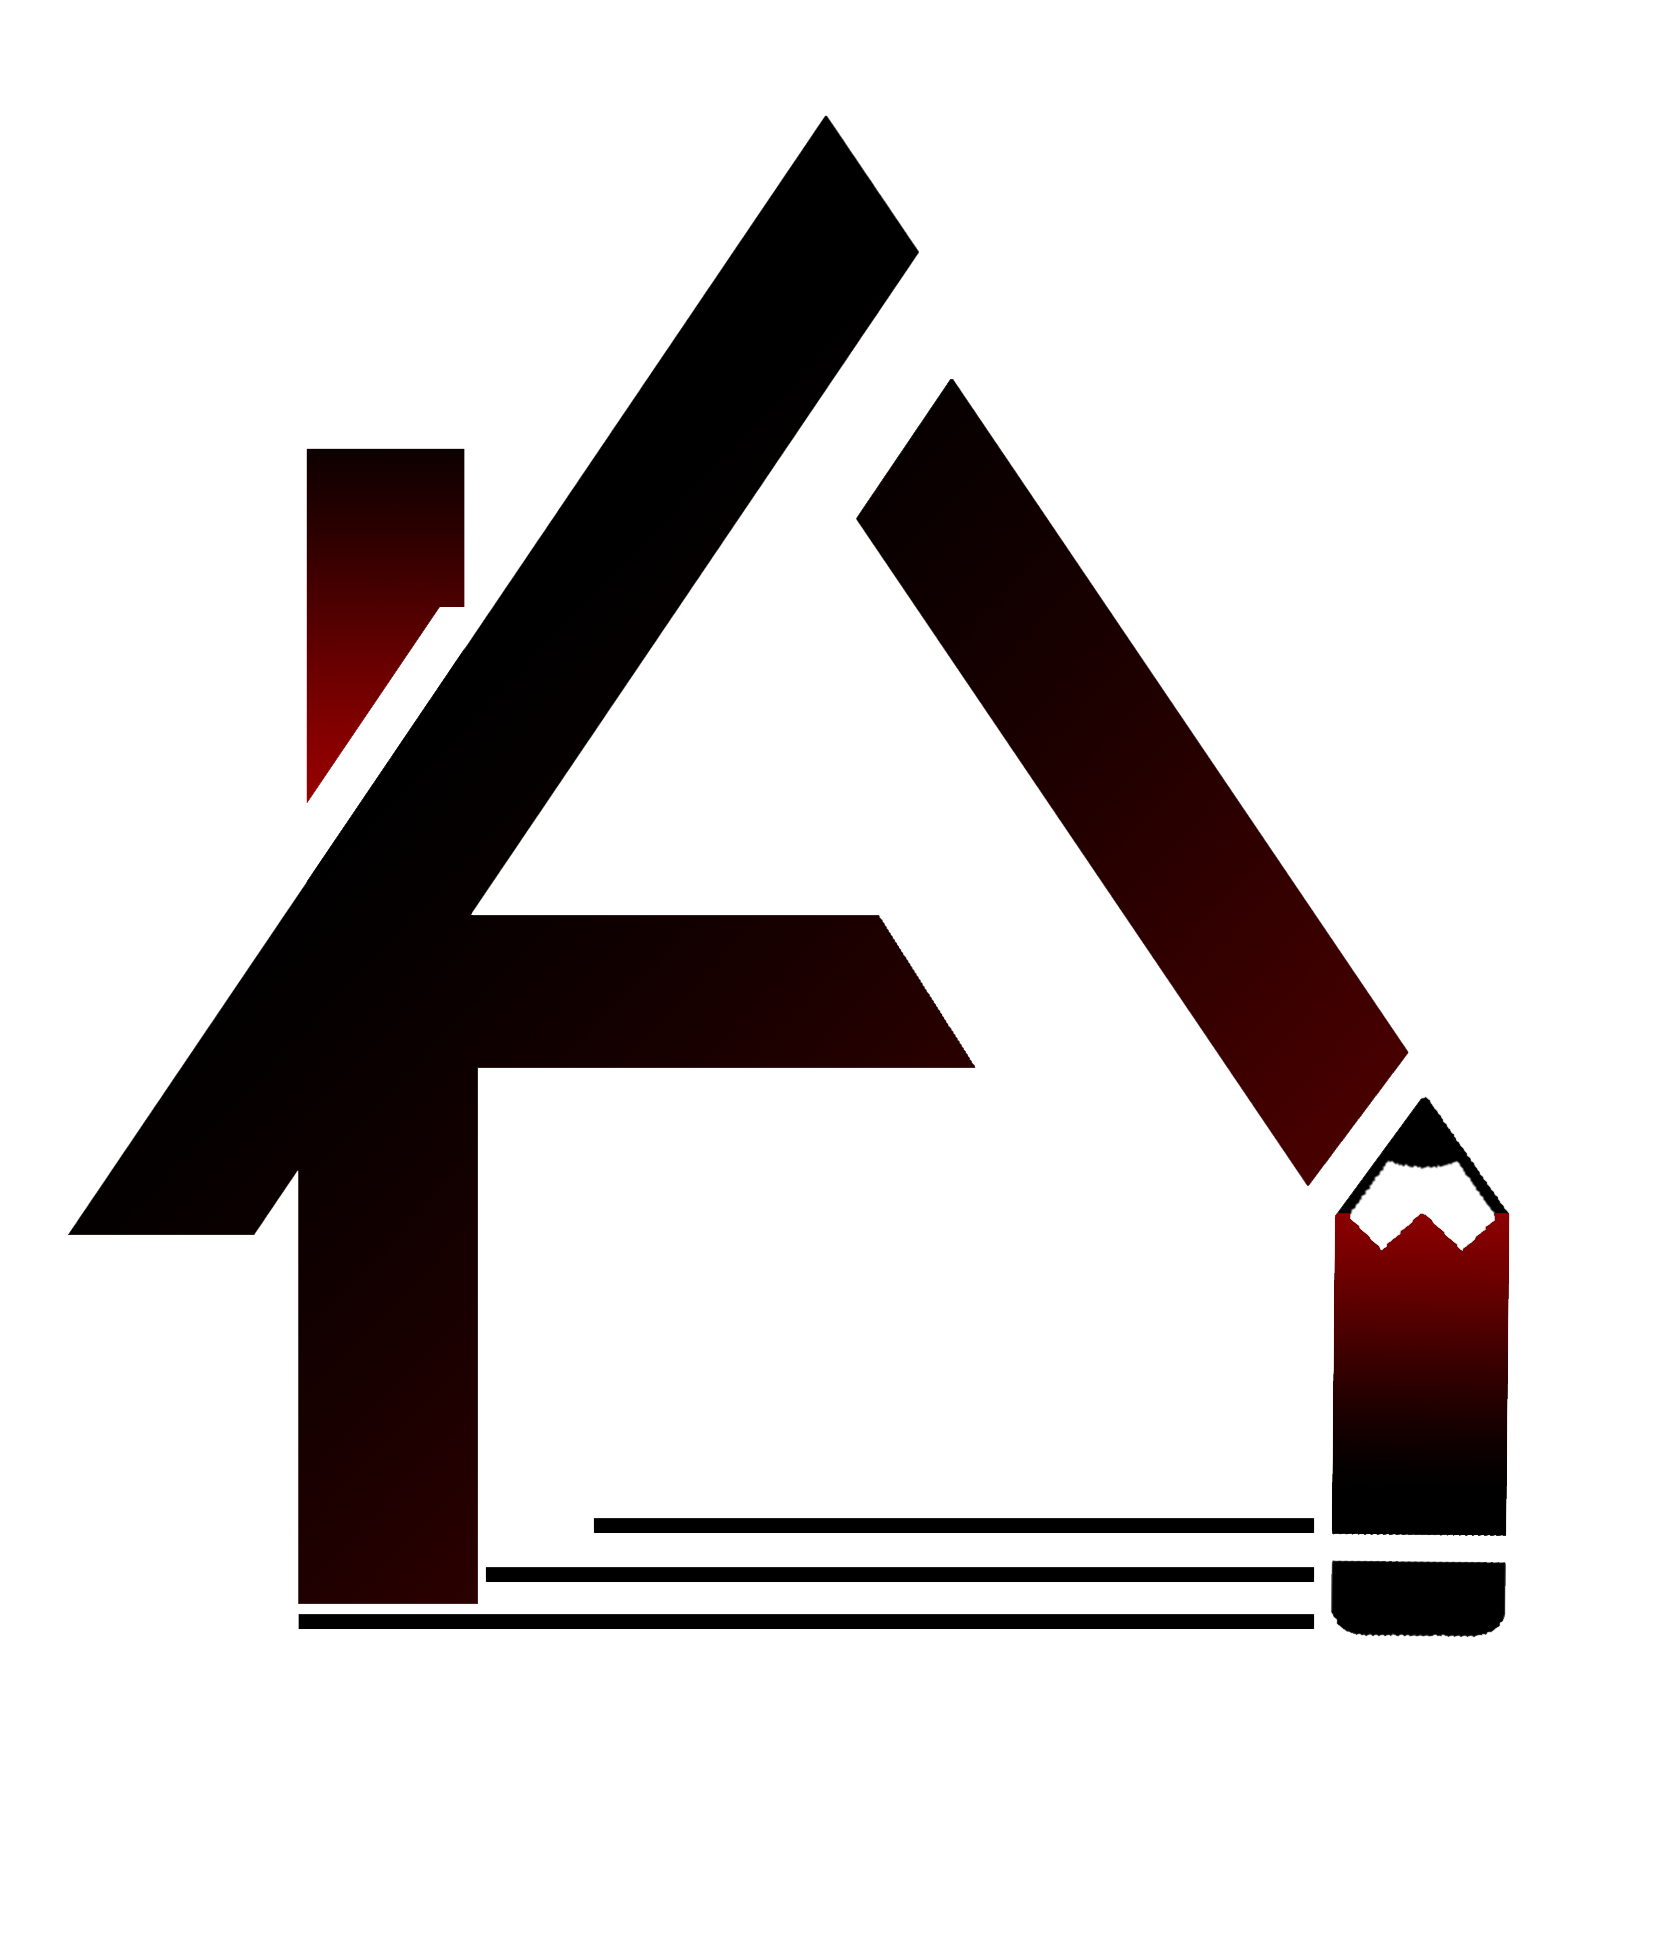 Archkia Design|Architect|Professional Services